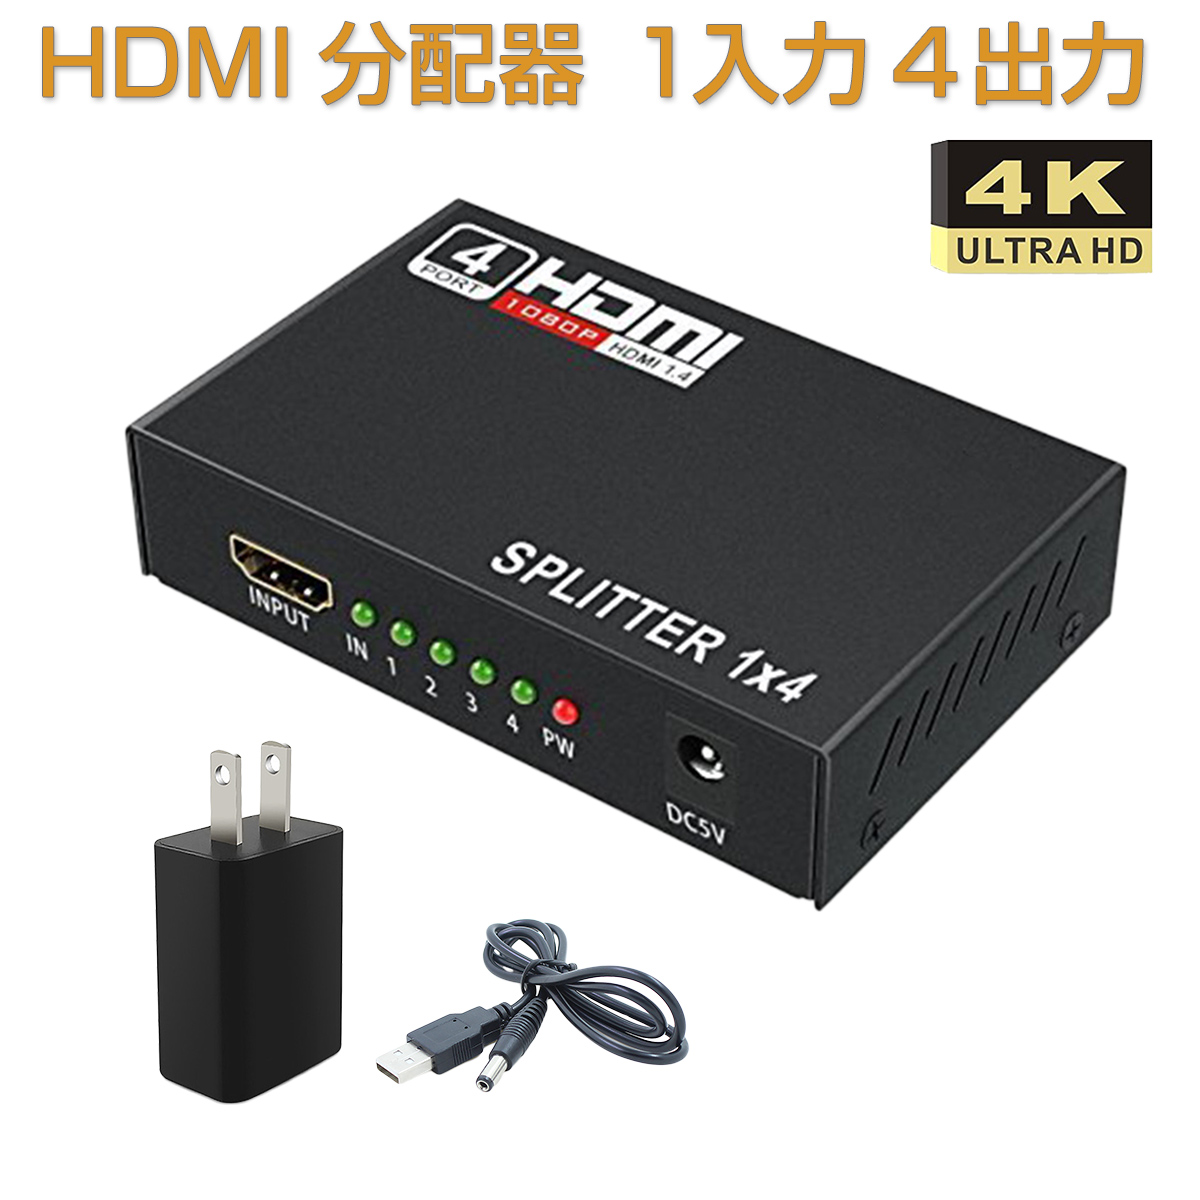 卸売B2B HDMI分配器 1入力4出力 HDMI スプリッター 4K 2K FHD対応 自動切り替え 3D映像対応 電源アダプター TV PC Xbox PS4 任天堂スイッチ Fire TV Stick AppleTV プロジェクター等に対応 SDM便送料無料 1ヶ月保証 K&M